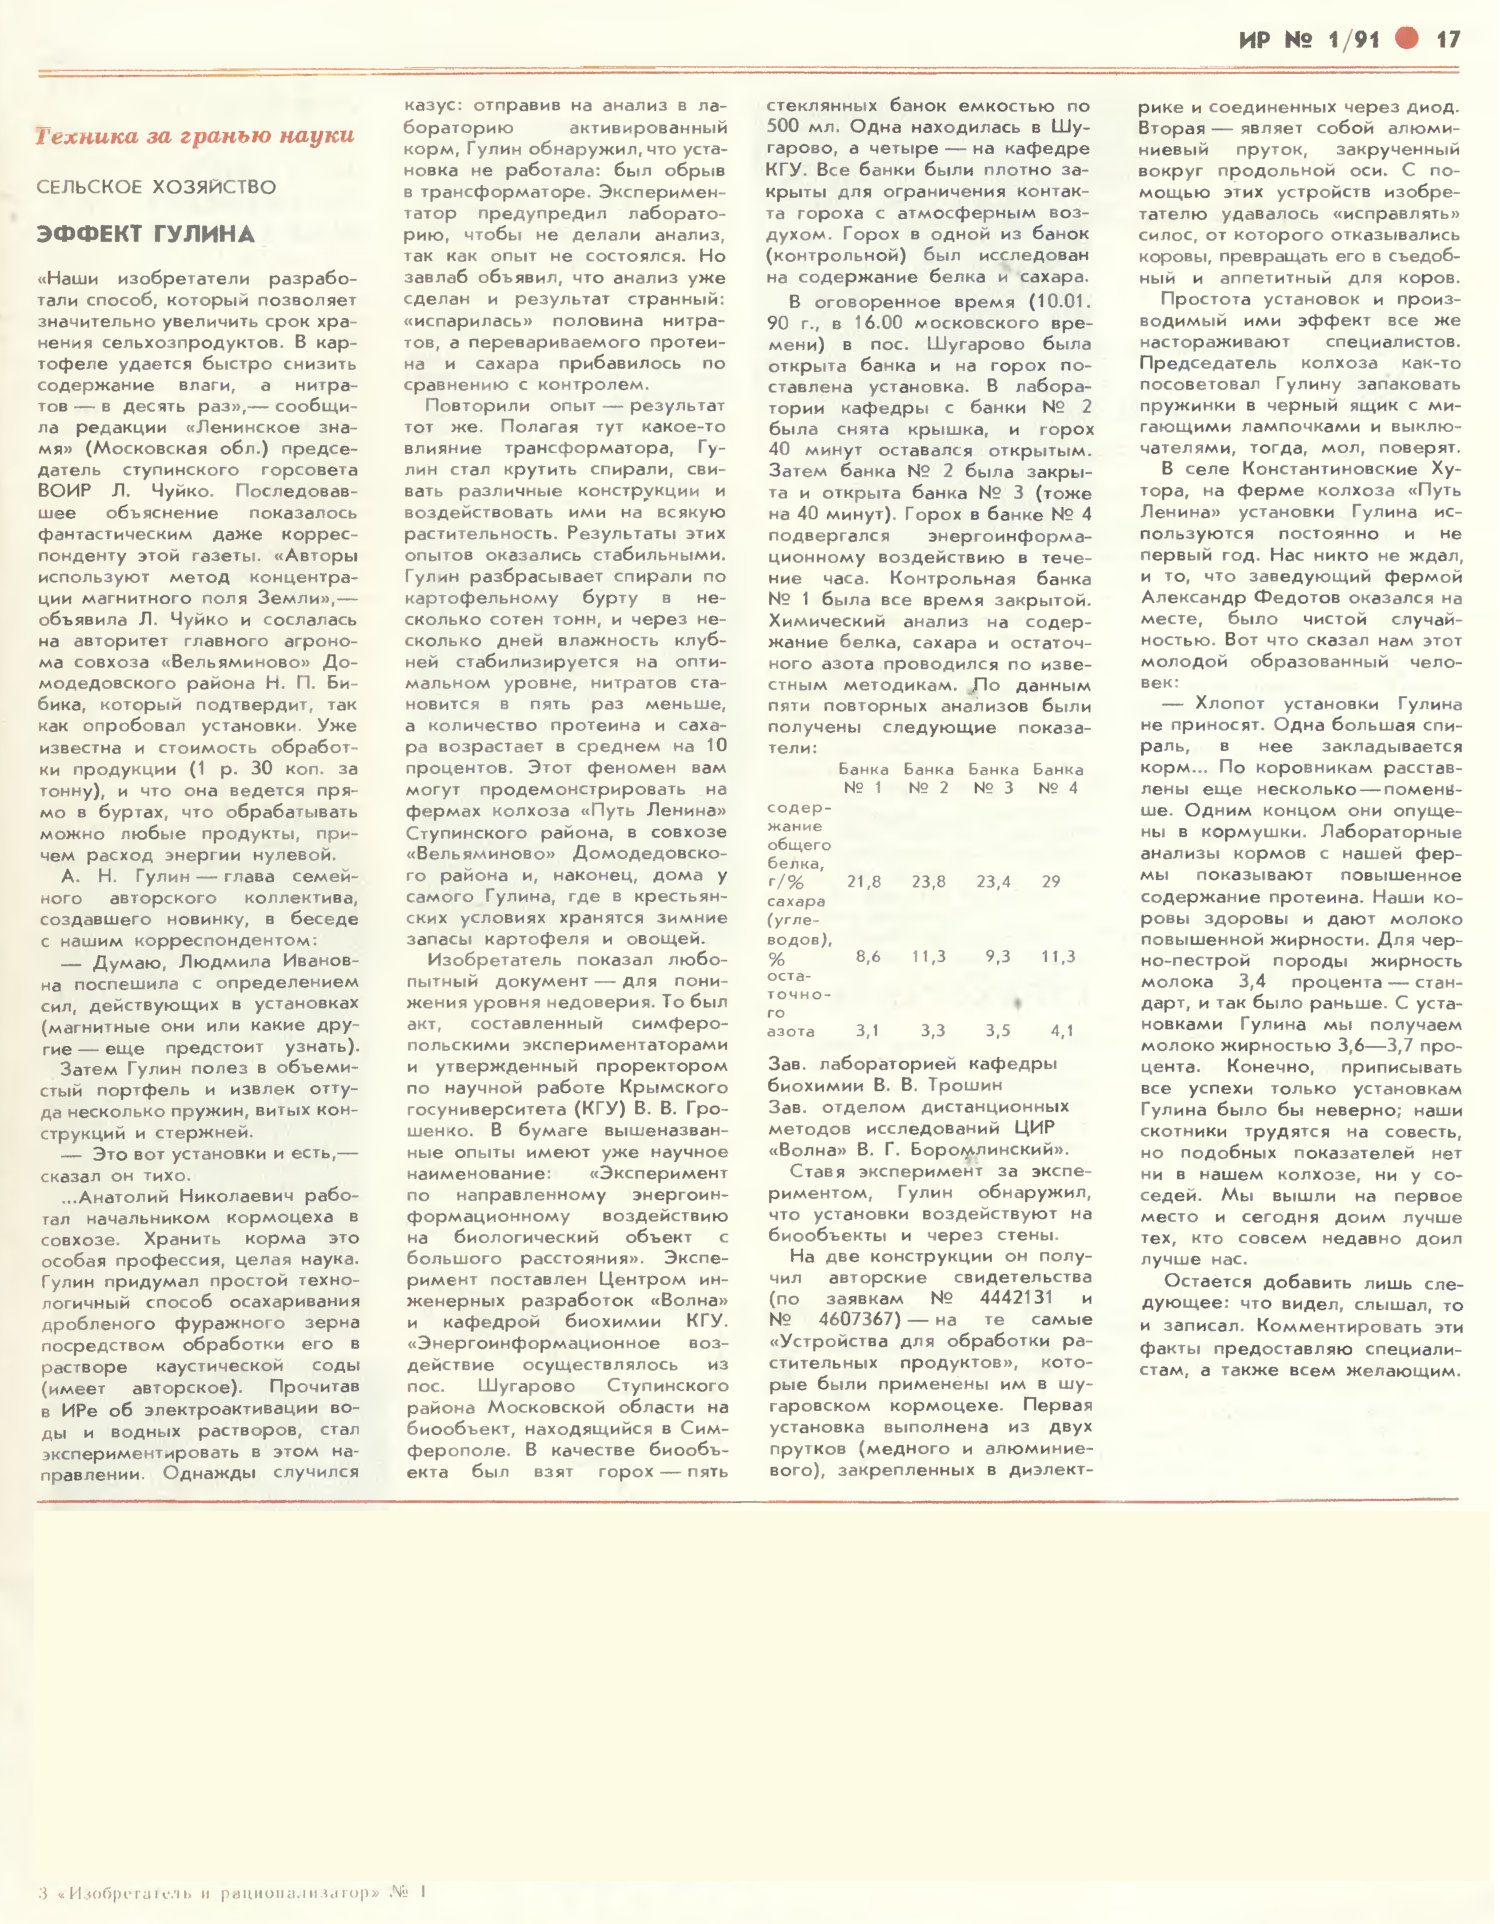 Эффект Гулина. Изобретатель и рационализатор, 1991, №1, с.1,17. Фотокопия №2